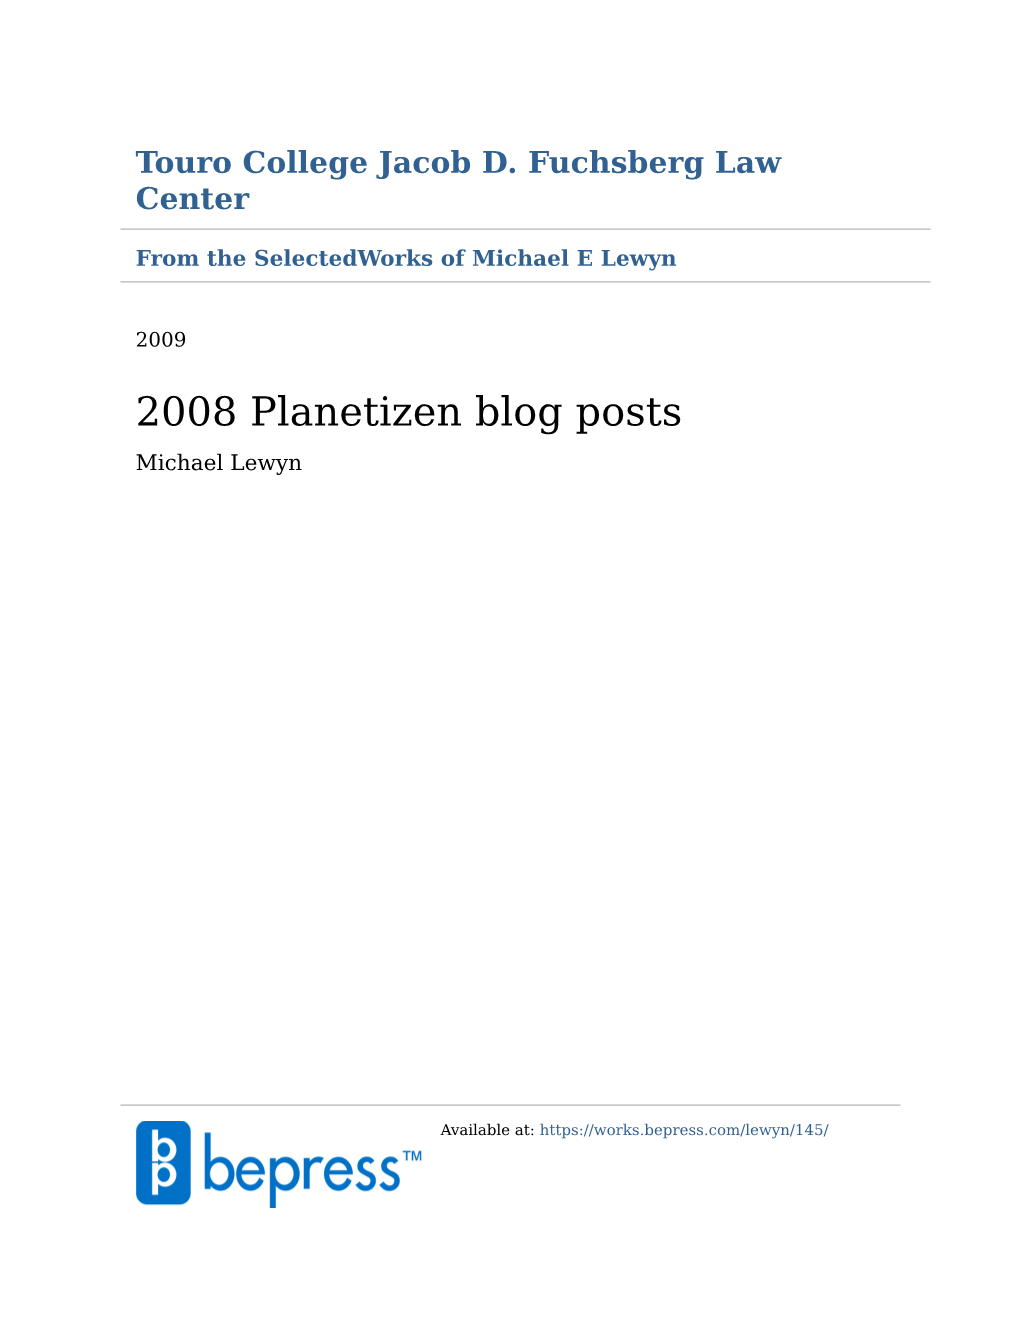 2008 Planetizen Blog Posts Michael Lewyn